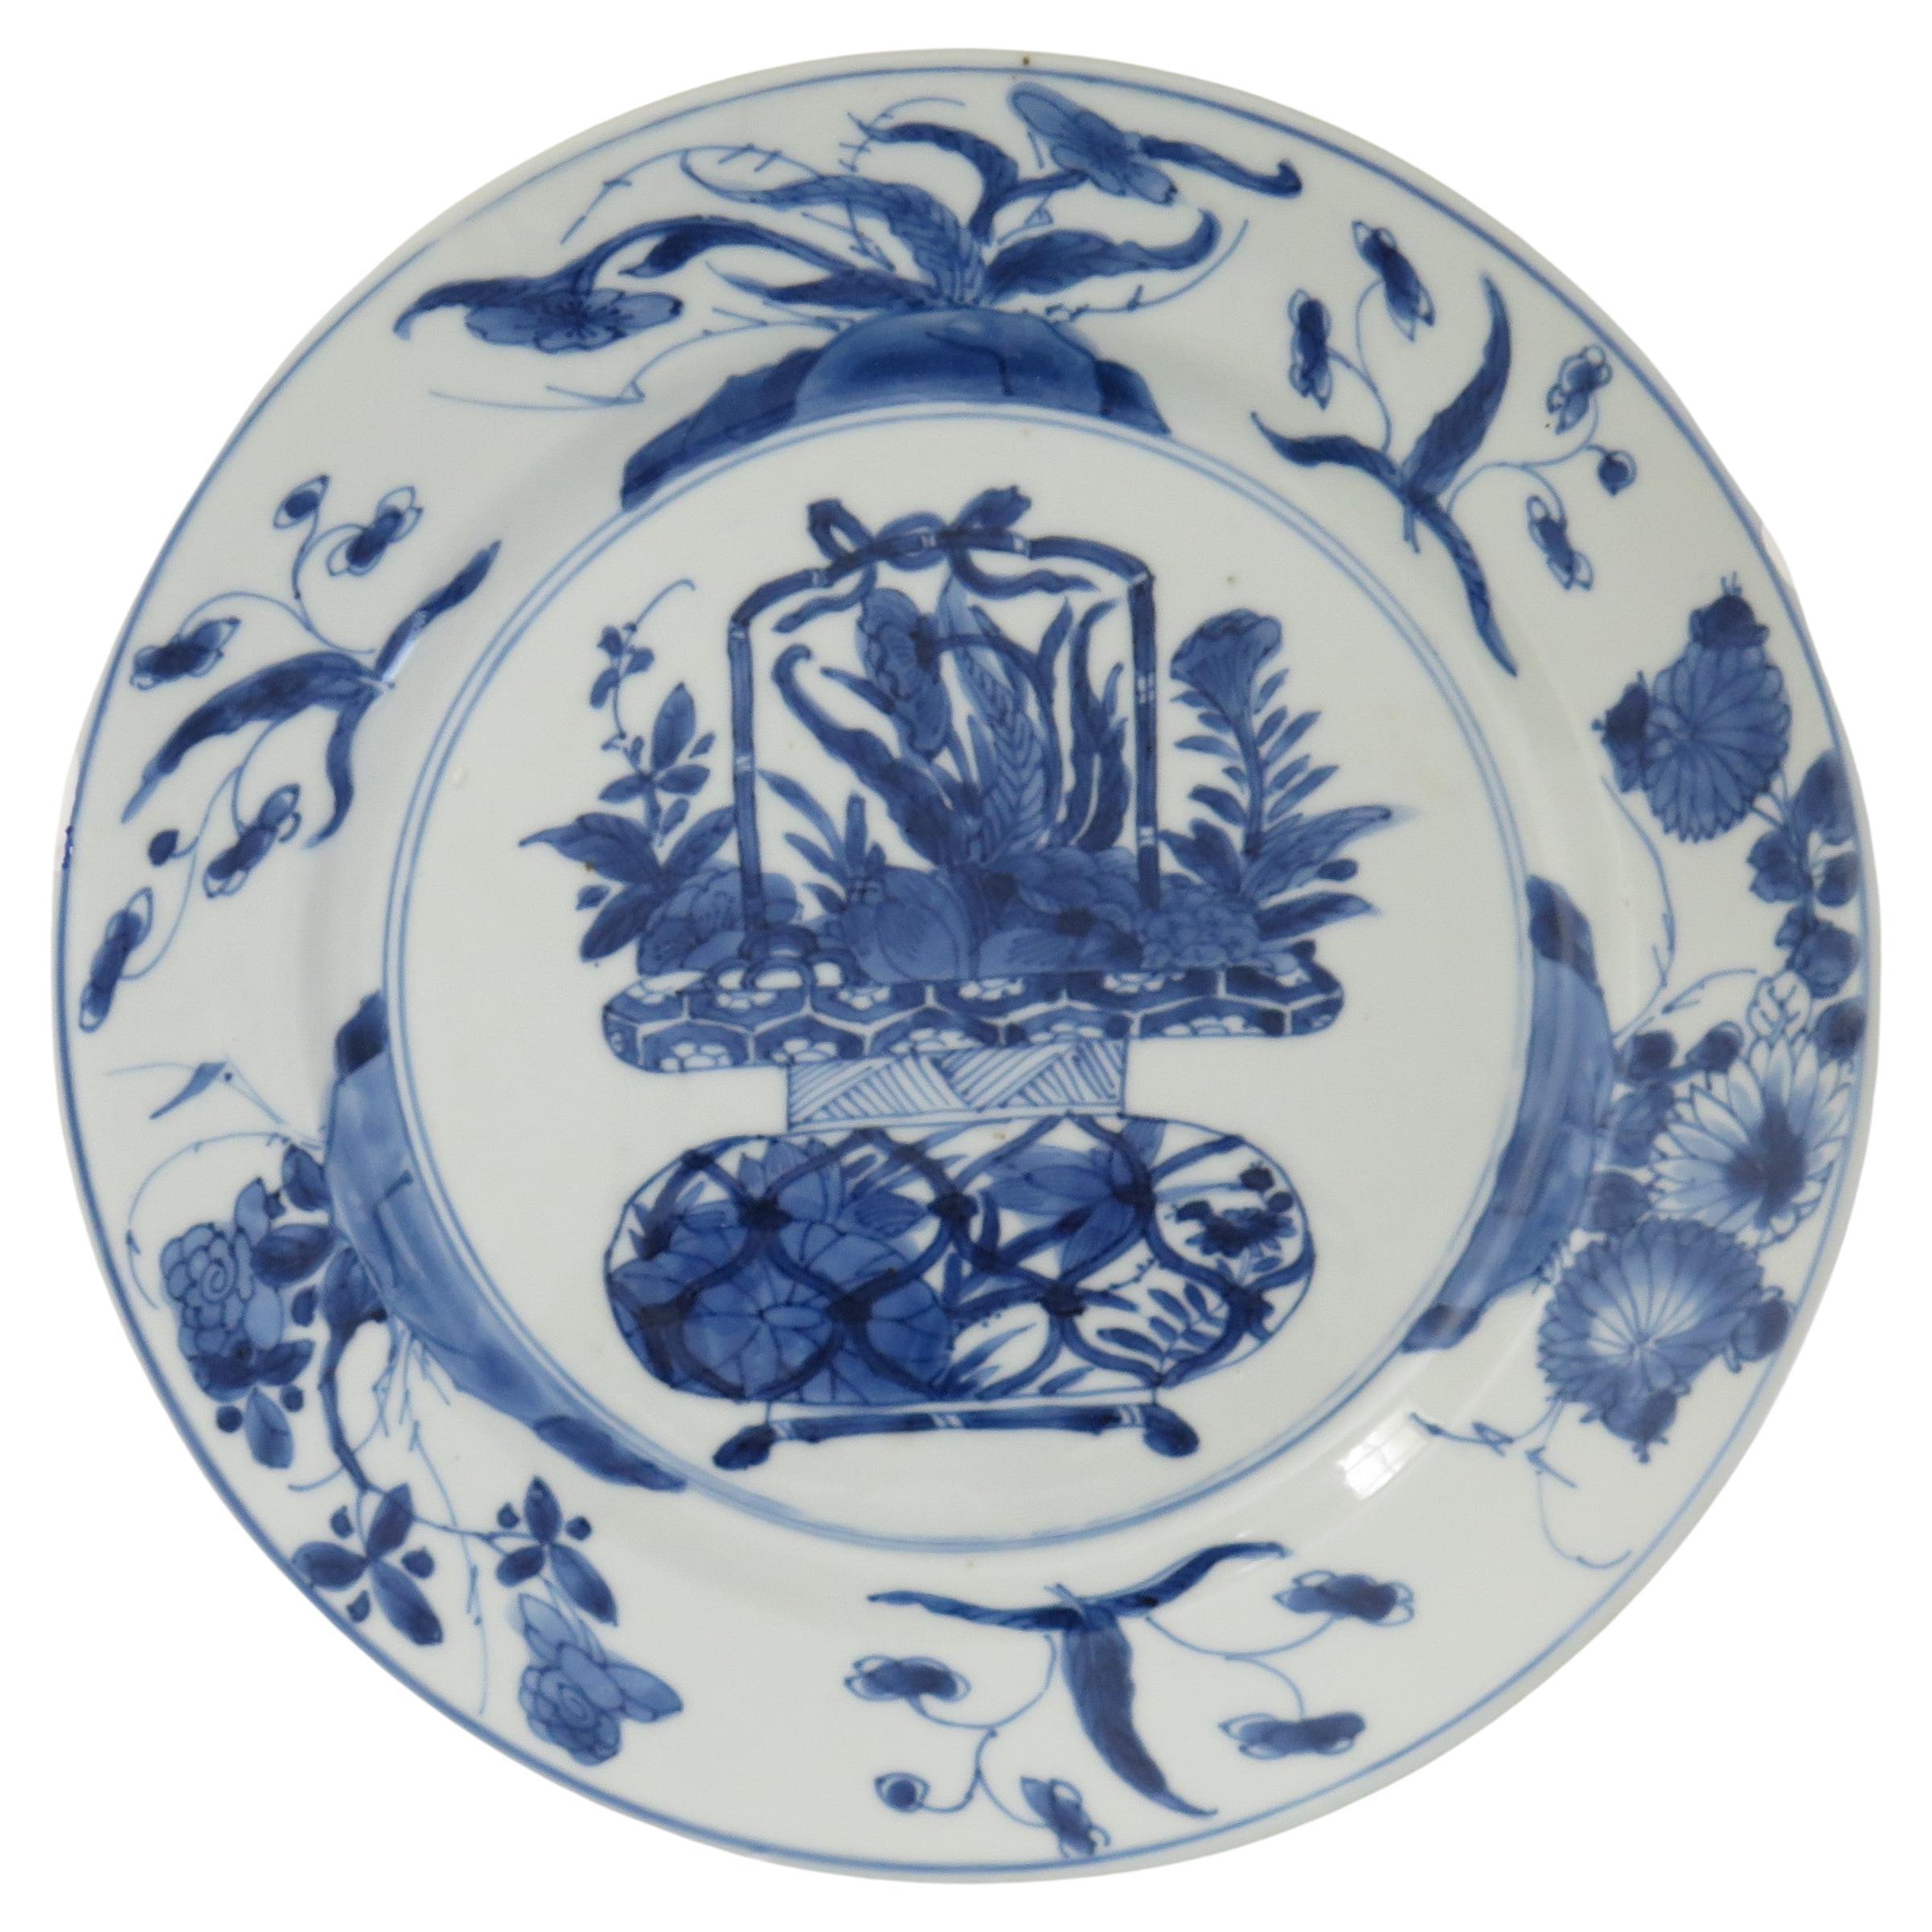 Dies ist ein wunderschön handbemalter chinesischer Porzellanteller in Blau und Weiß aus der Qing, Kangxi Periode, 1662-1722.

Der Teller ist fein getöpfert mit einem sorgfältig geschnittenen Bodenrand und einer schönen, reichhaltigen glasigen, sehr